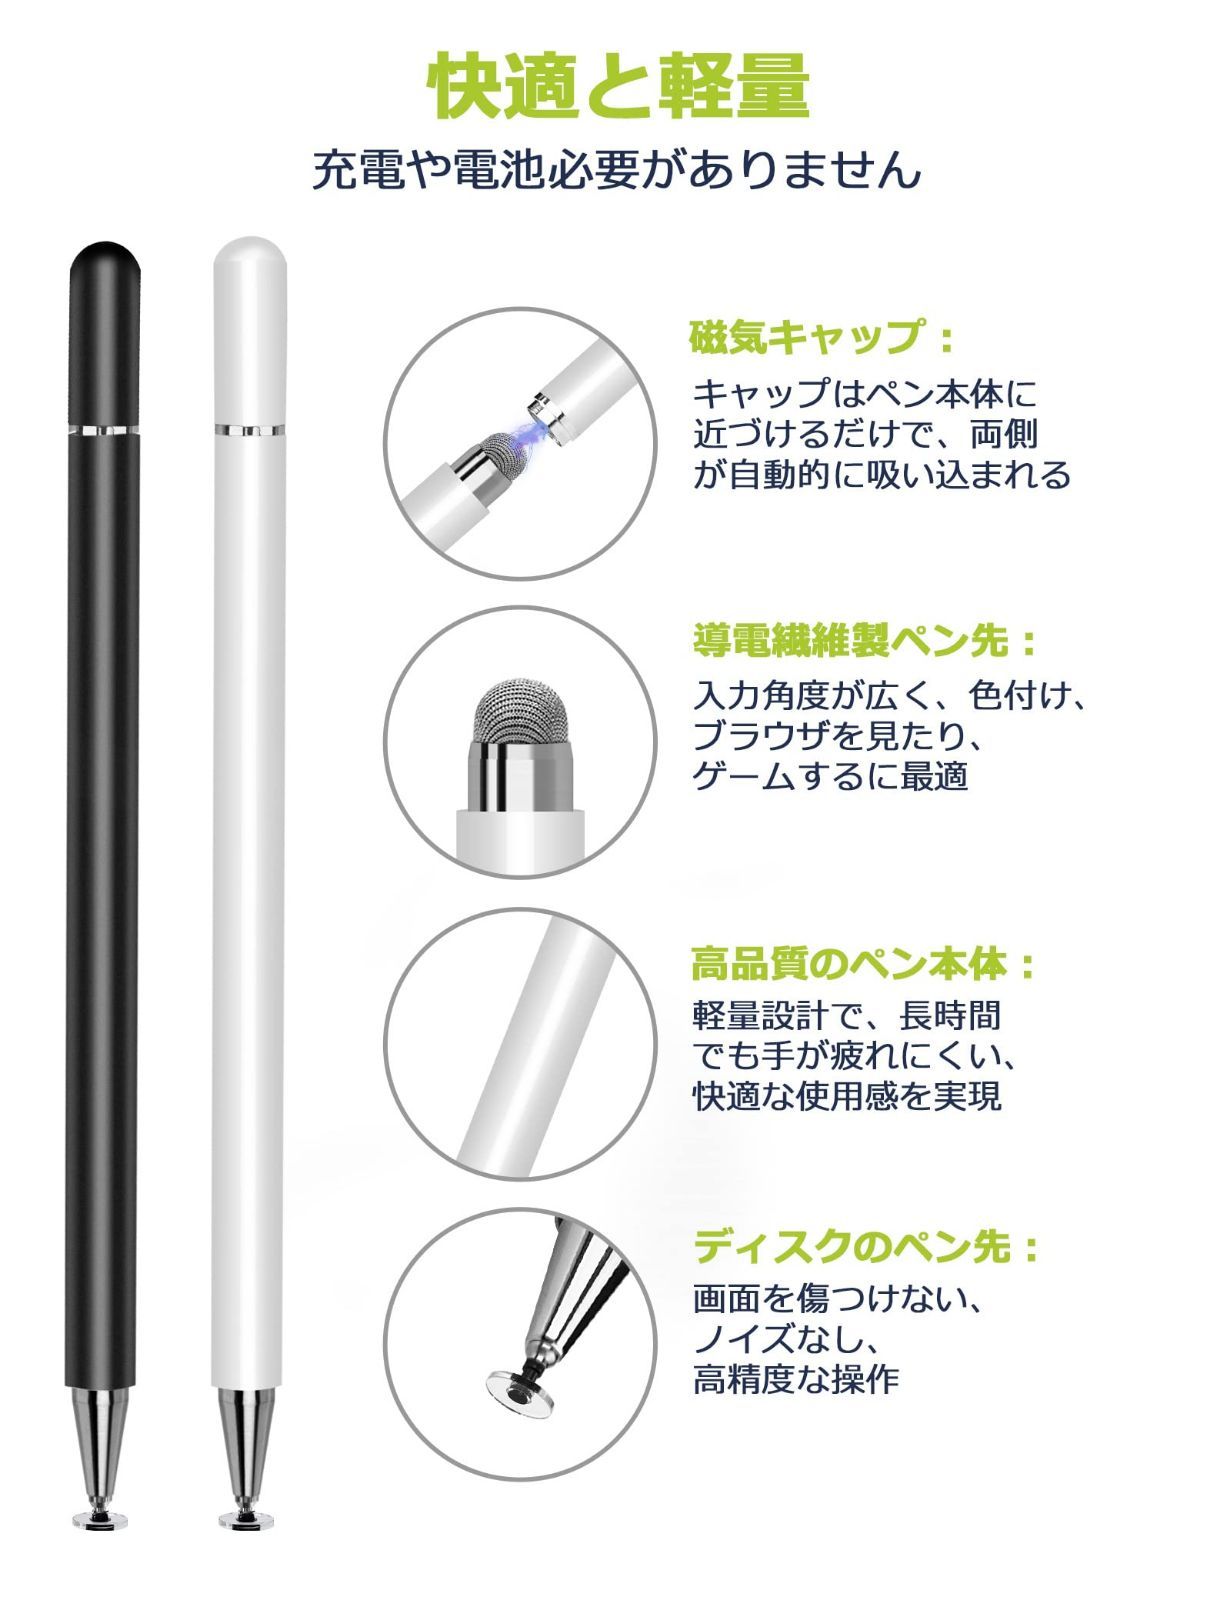 ◇限定Special Price スタイラス タッチペン iPhoneAndroid 充電や電池不要 